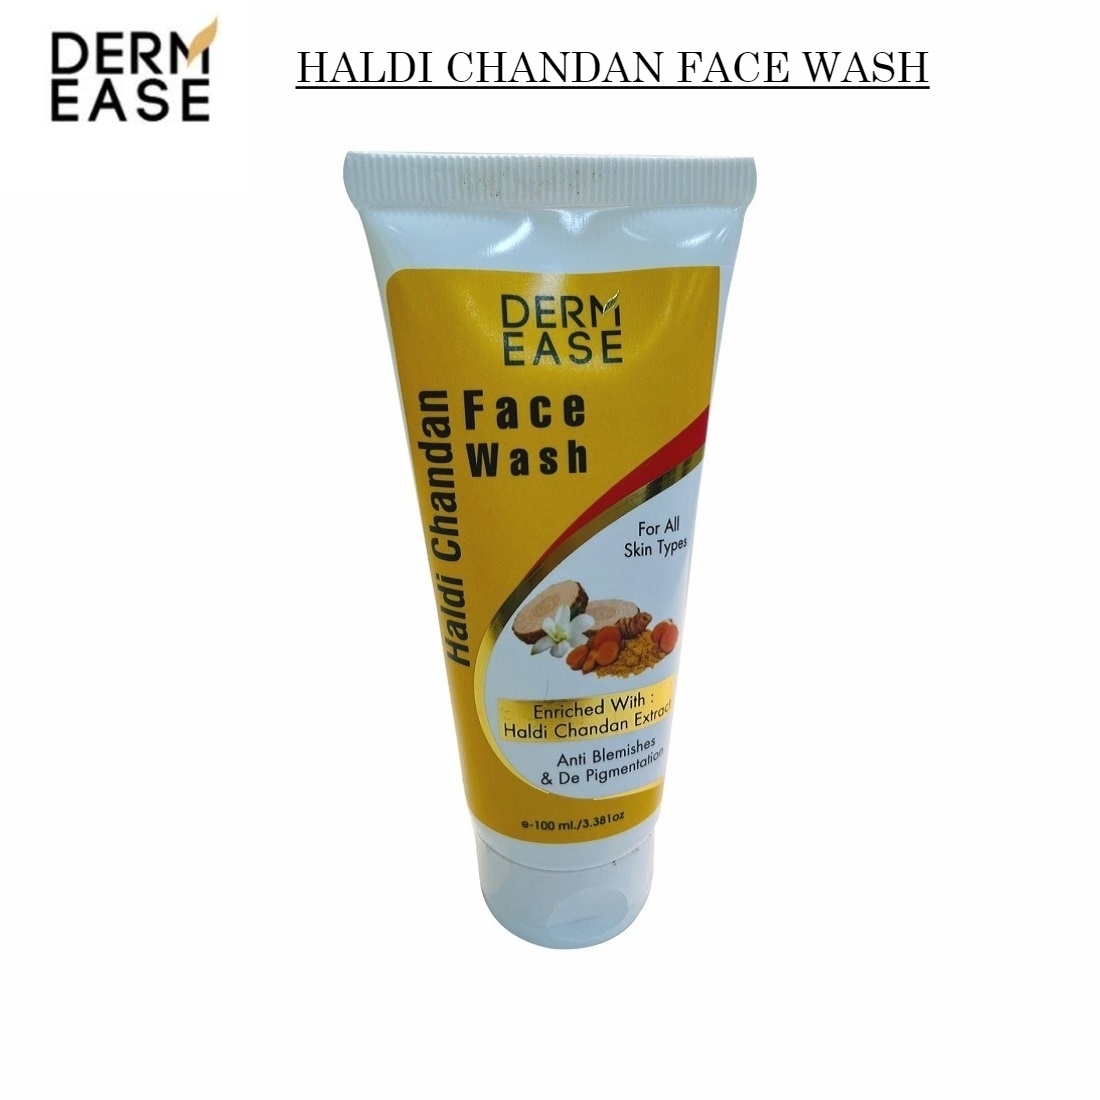 DERM EASE Haldi Chandan Face Wash